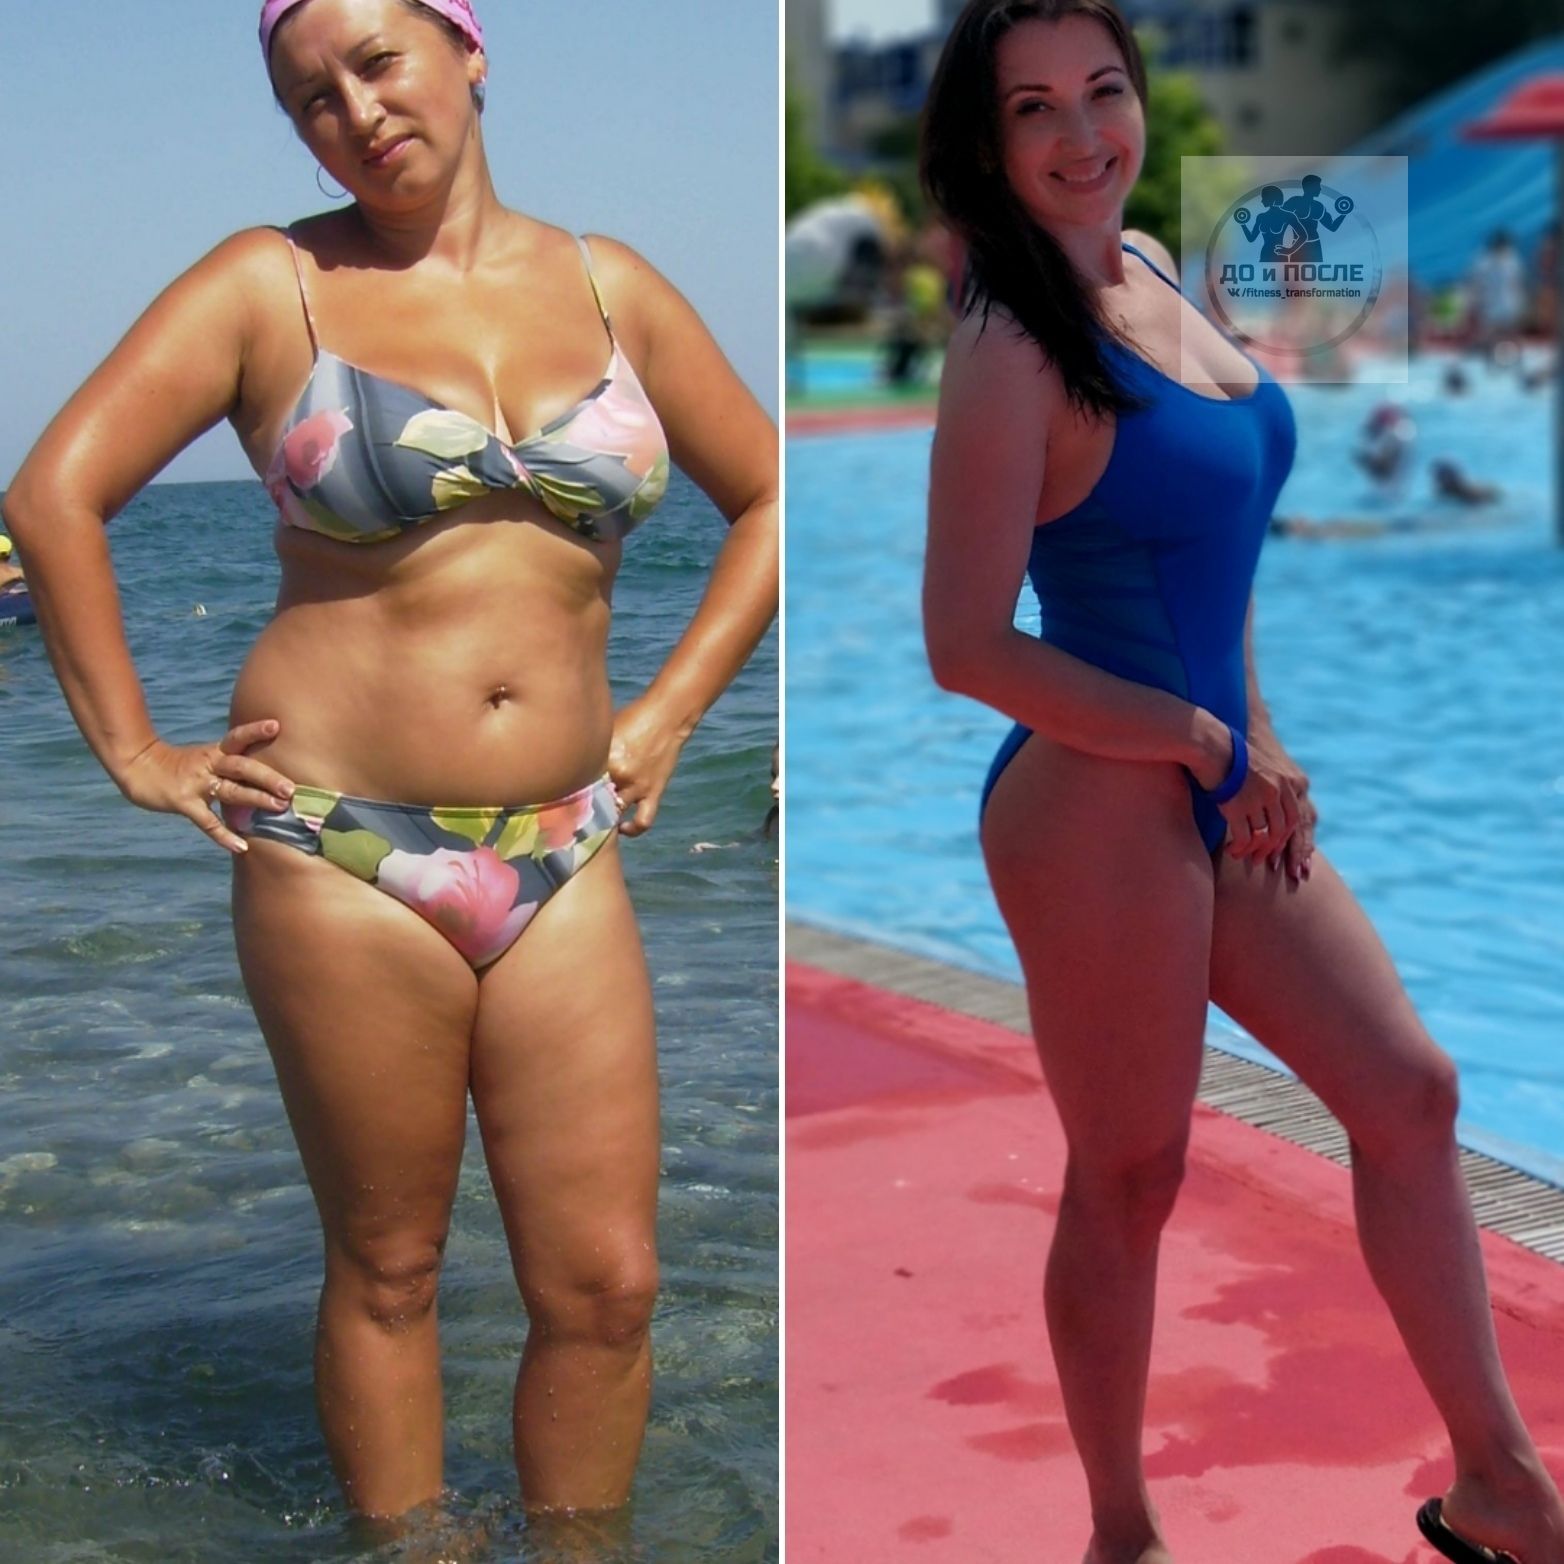 20 кг 40 60 100. Женщины с весом 70 кг. Вес женщины 70 кг. Похудение до и после. Фигура девушки 70кг.